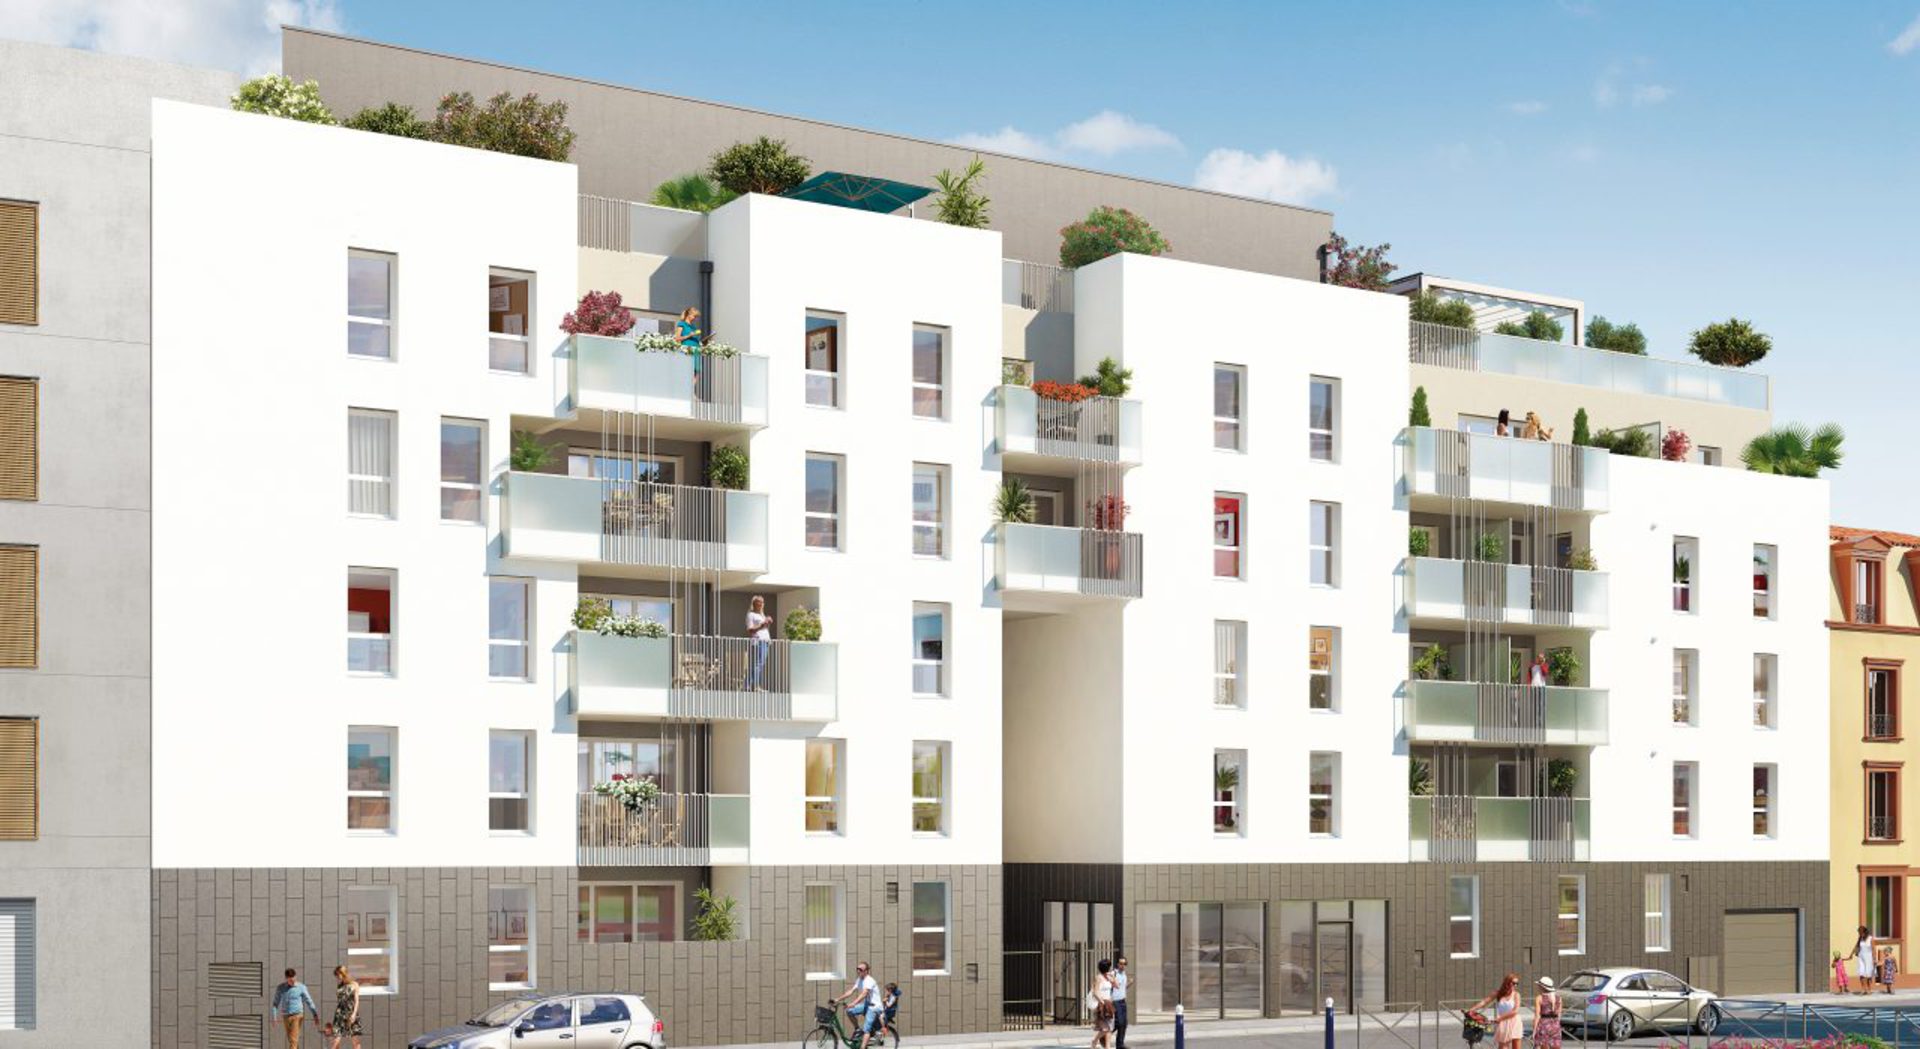 Homki - Vente Appartement  de 26.15 m² à Villeurbanne 69100